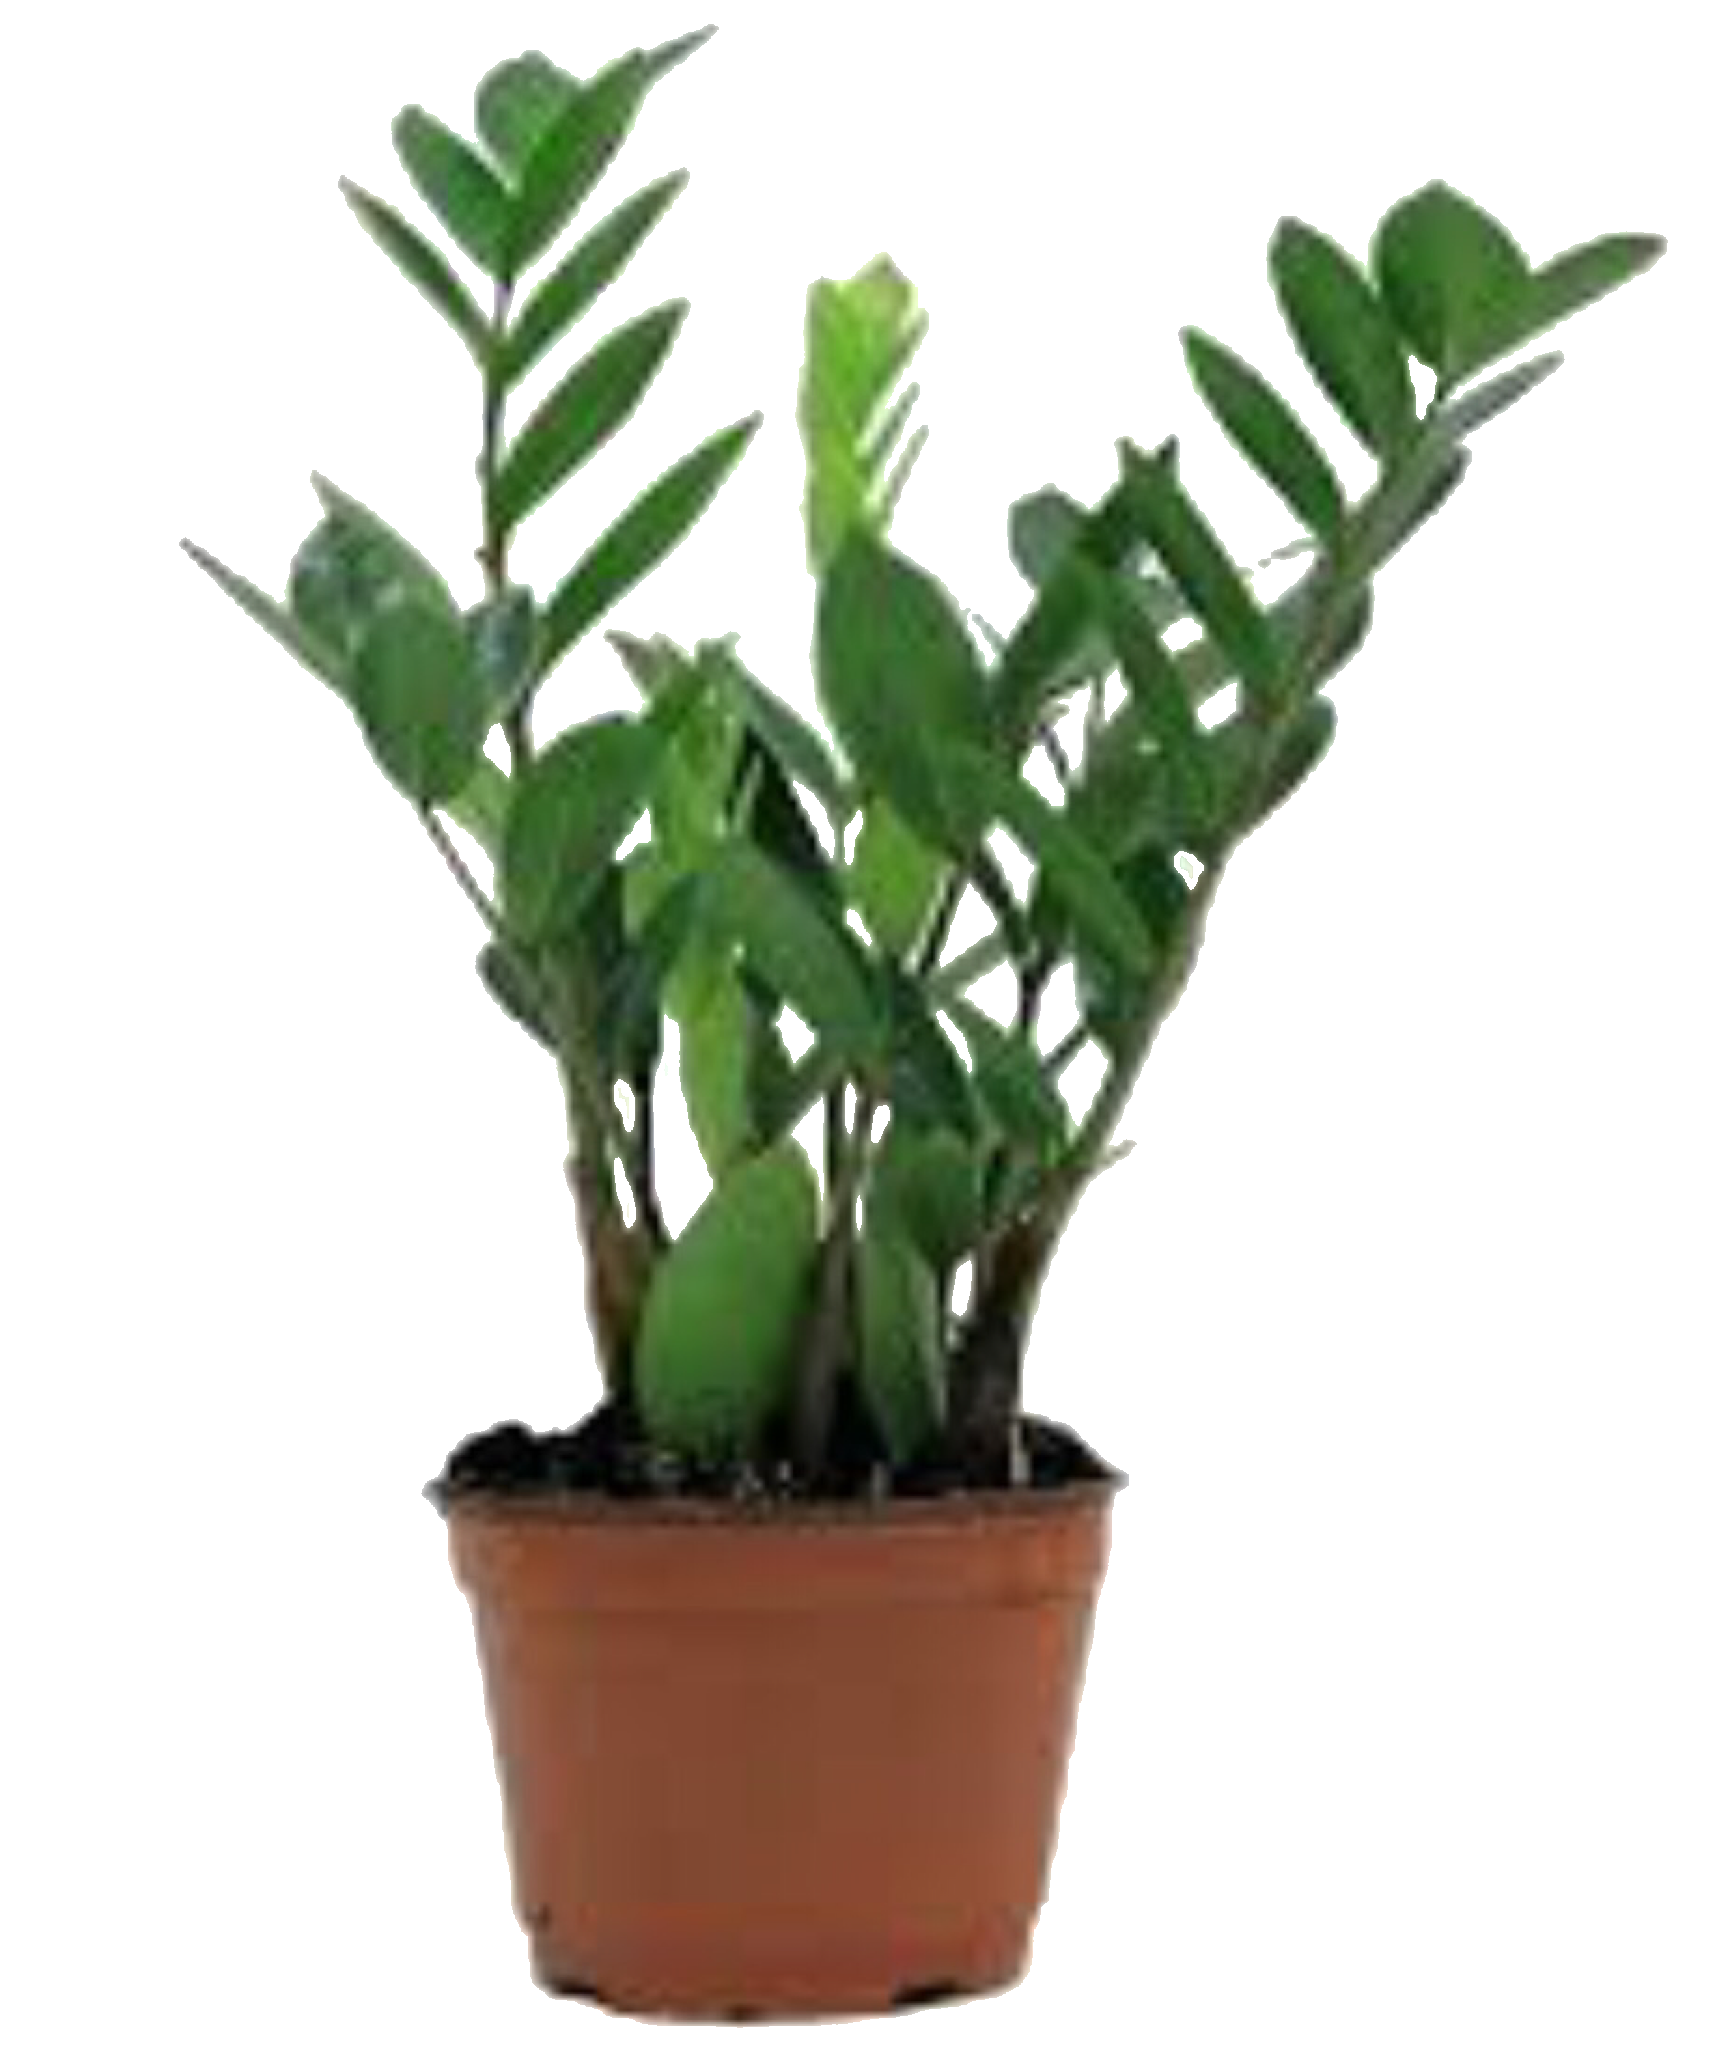 Замиокулькас шорт. Замиокулькас zamiifolia. Замиокулькас замиелистный (Zamioculcas zamiifolia). Замиокулькас 17/60. Замиокулькас 21.